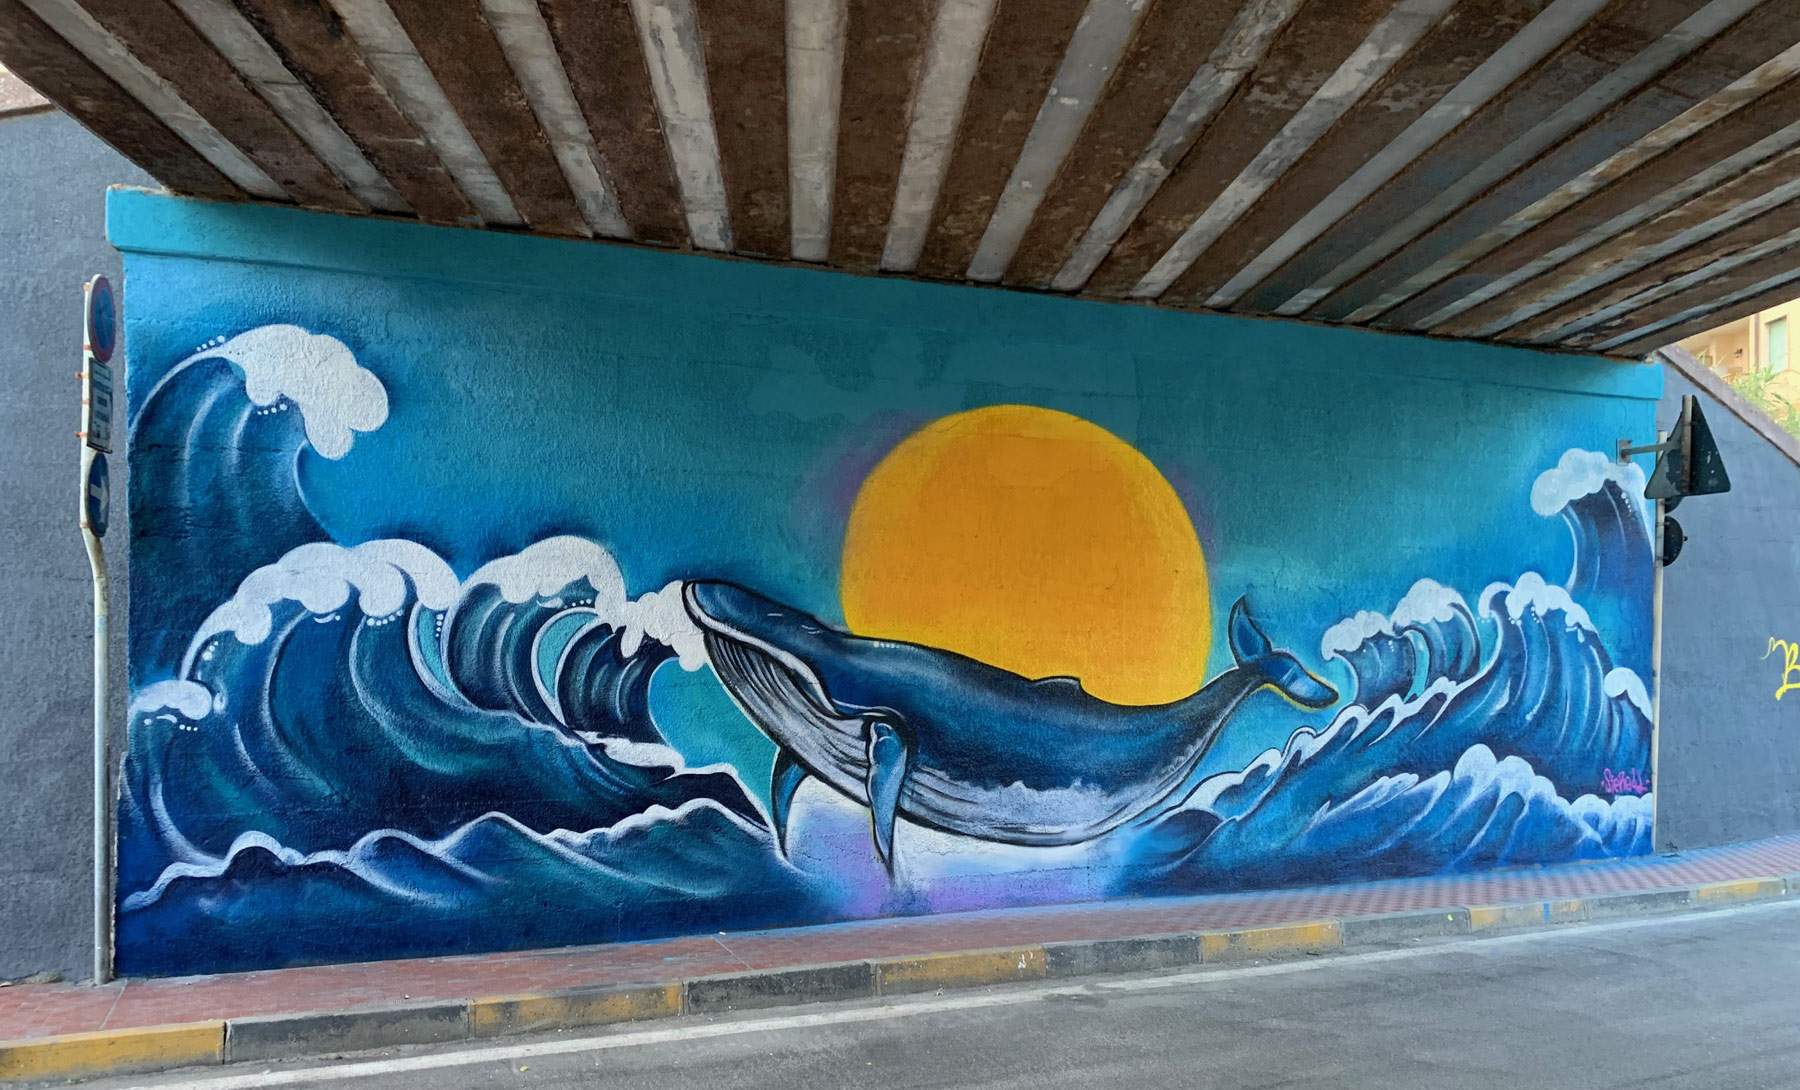 Ligurie, le village de Vallecrosia renaît grâce au street art : le projet de réaménagement commence